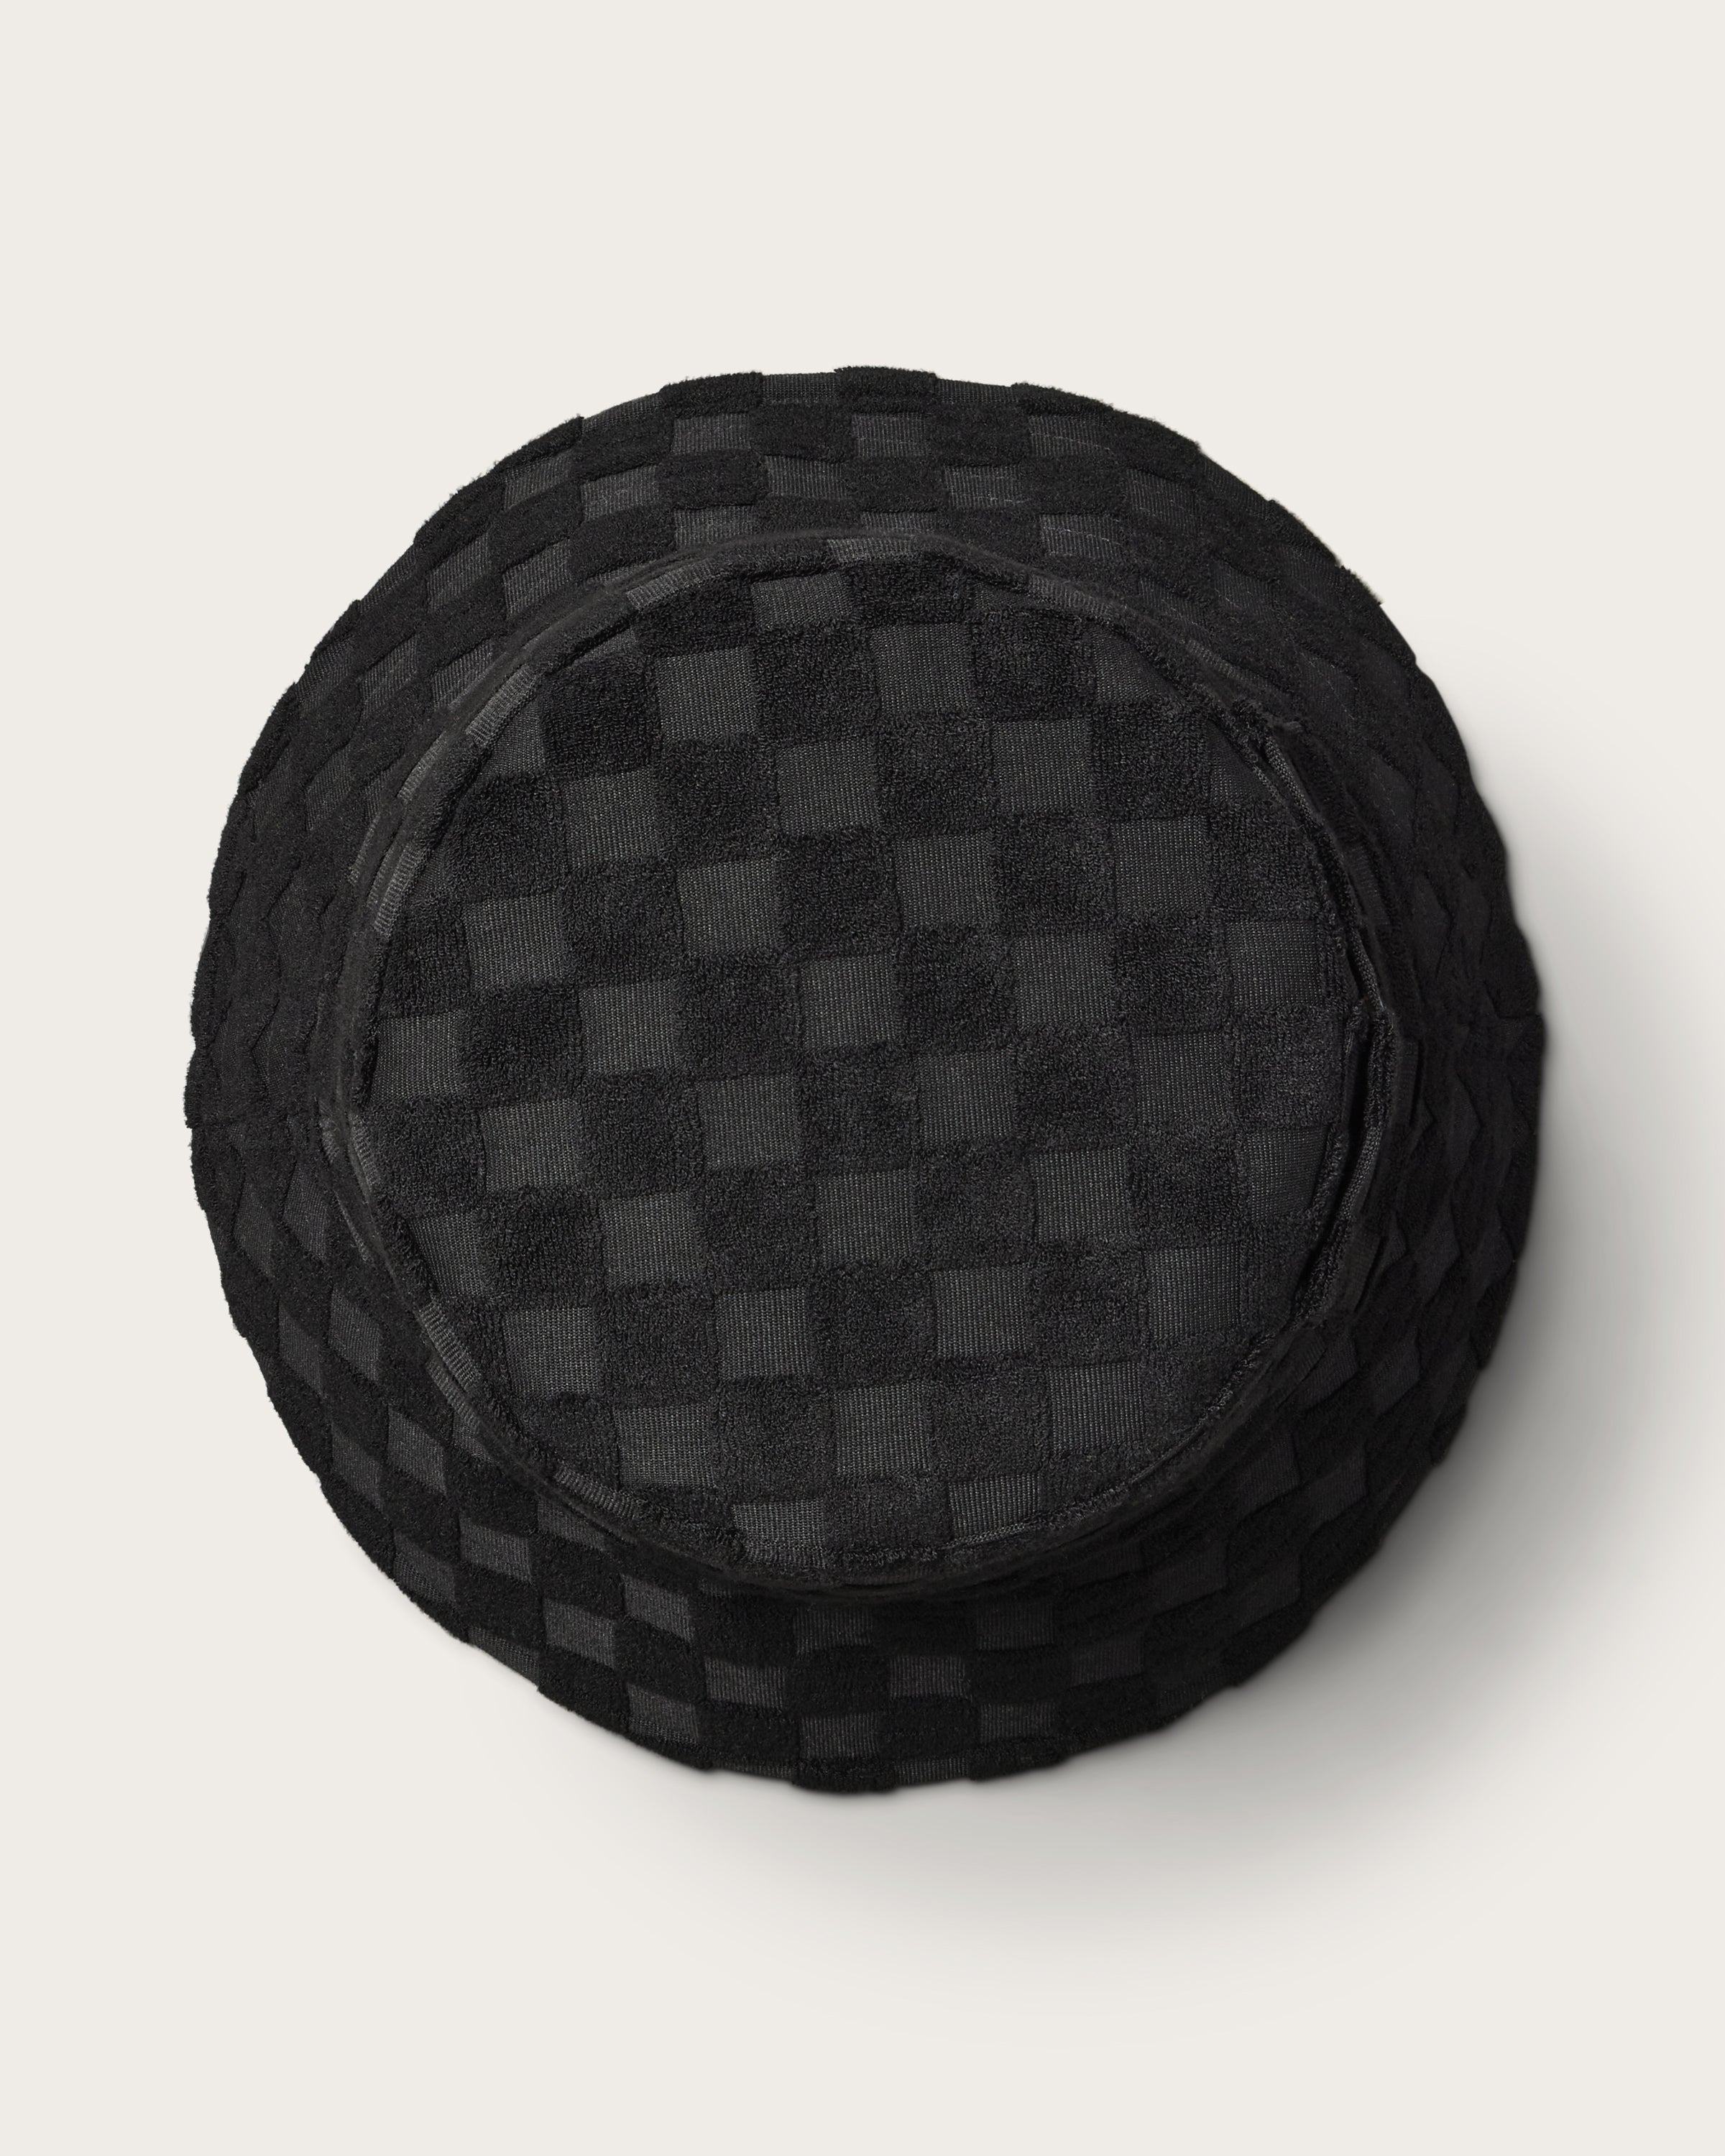 Hemlock Marina Terry Bucket Hat in Black Check top of hat